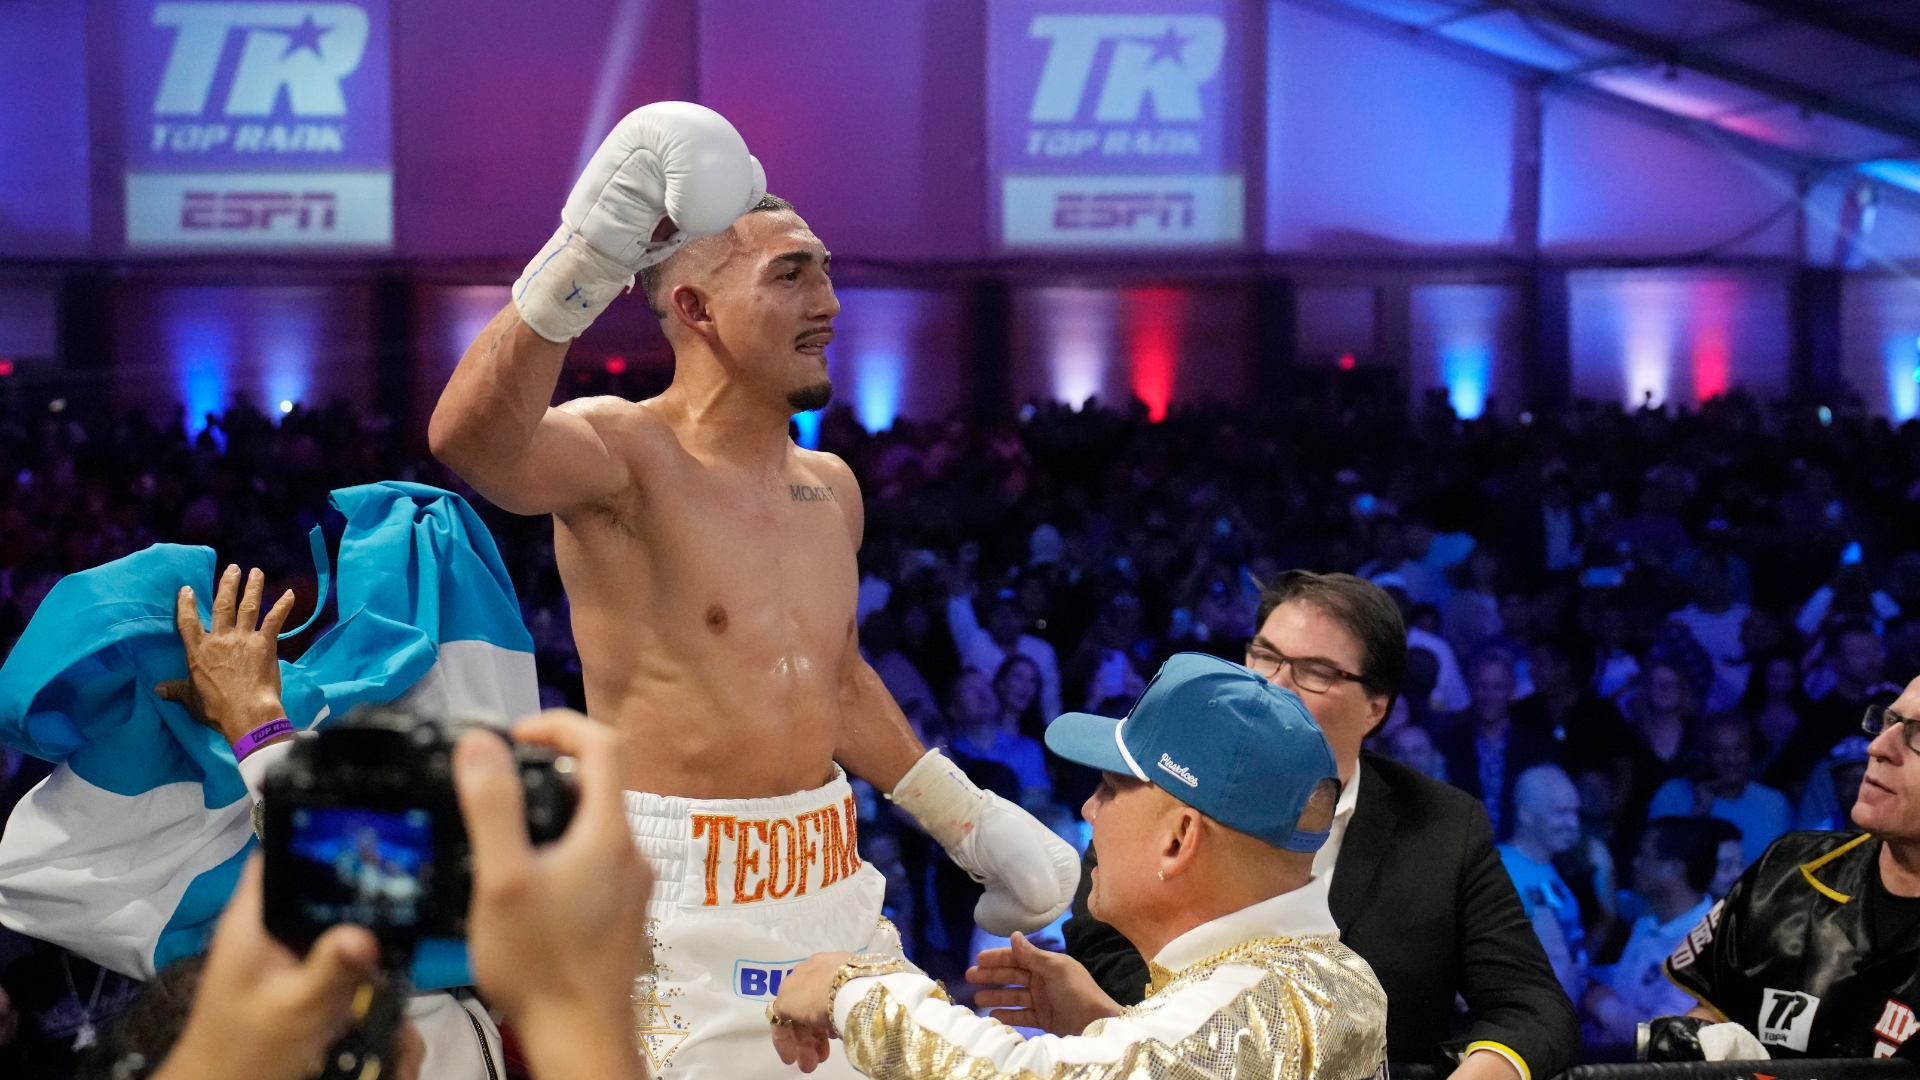 Teofimo Lopez wins via electric TKO in 7th - Stream the Video